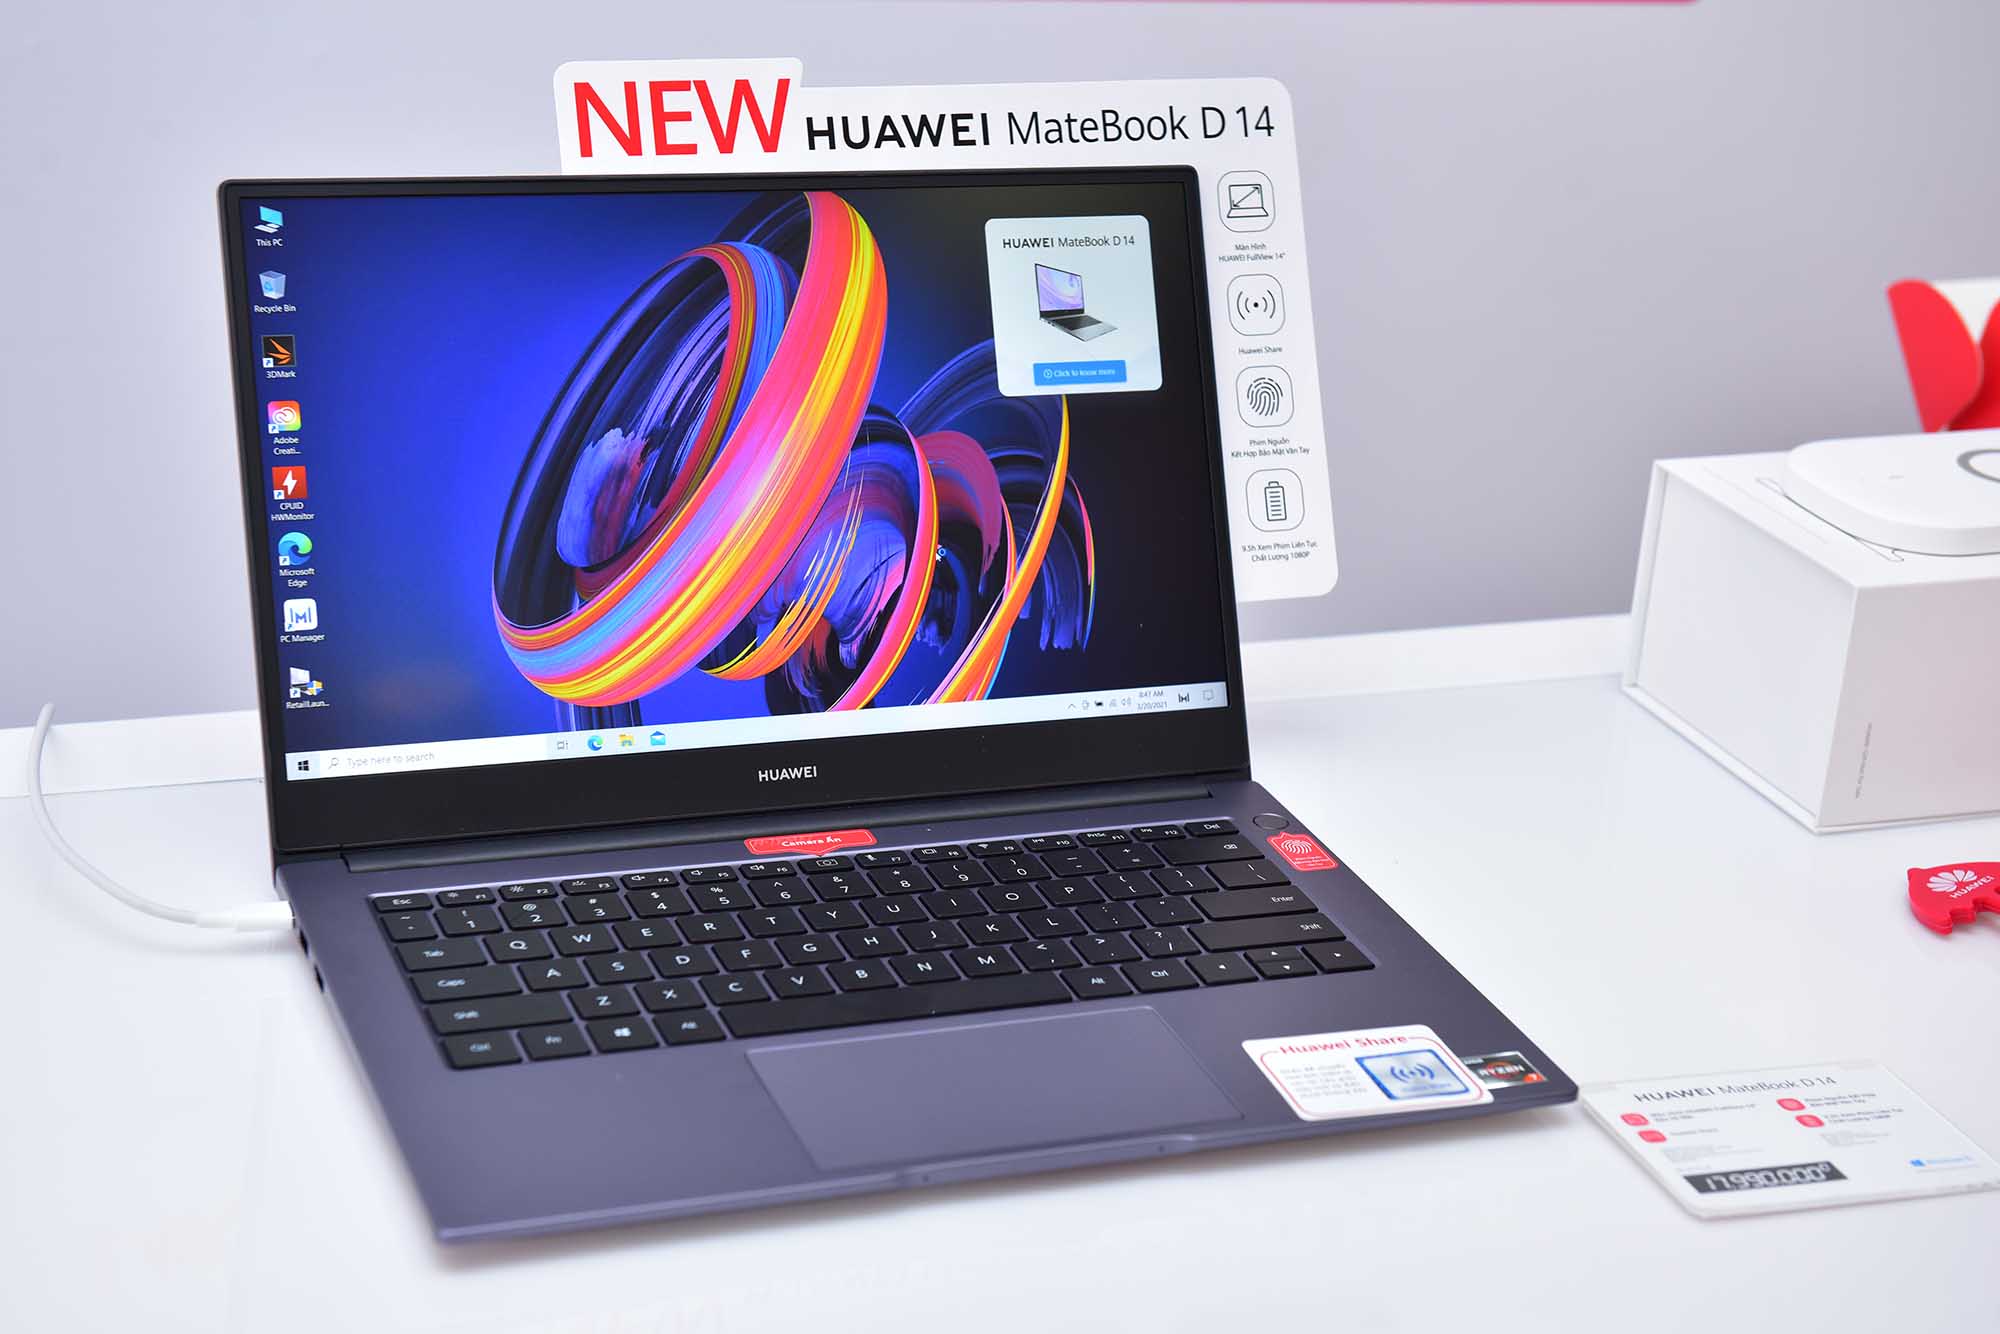 HUAWEI Matebook D 14 phiên bản nâng cấp card đồ họa on board AMD Radeon ™ RX Vega 10 chính thức lên kệ hôm nay, giá 17,990,000 VNĐ